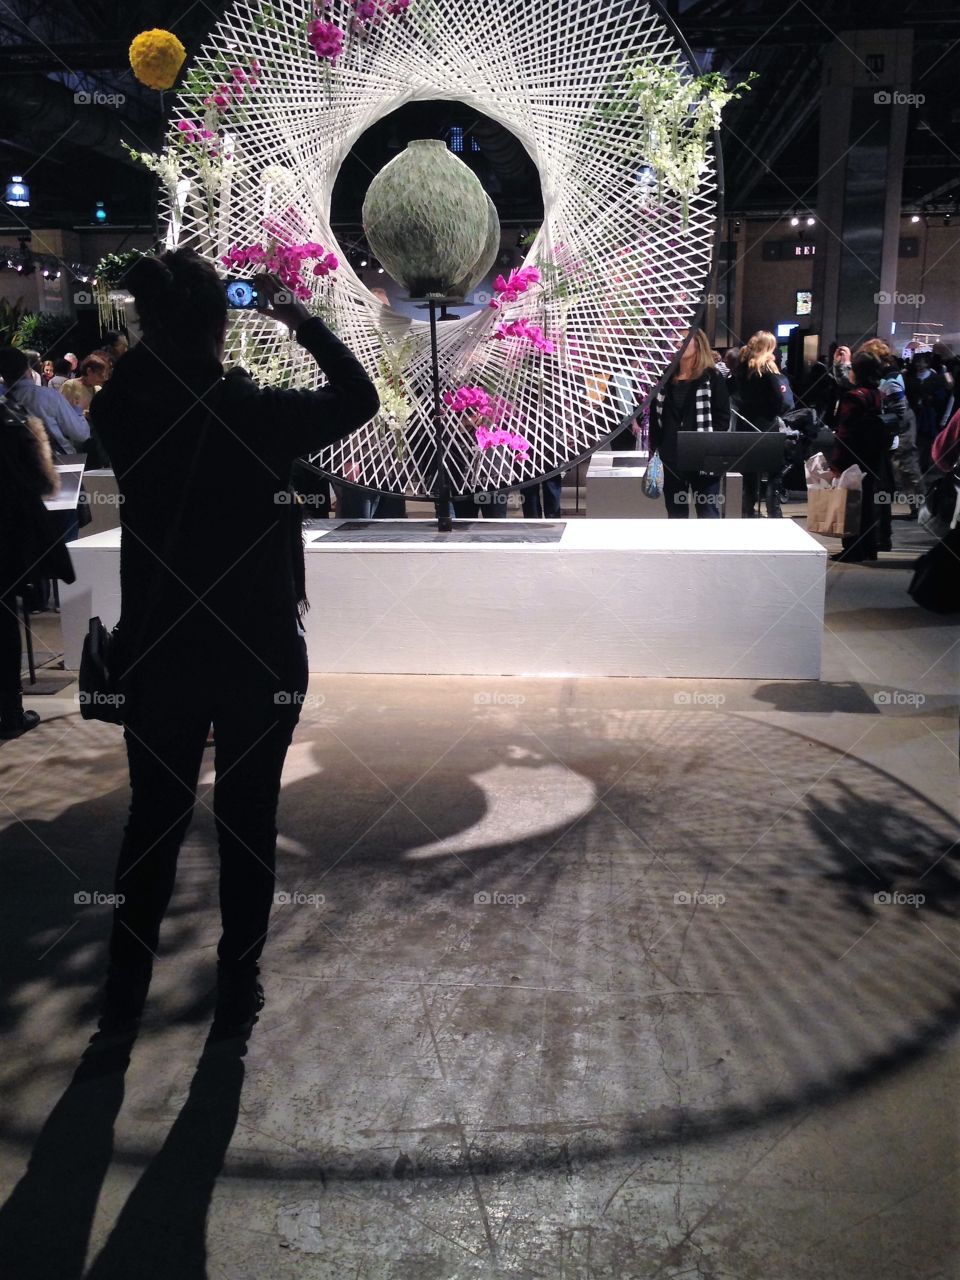 Philadelphia flower show 2013  art installation 